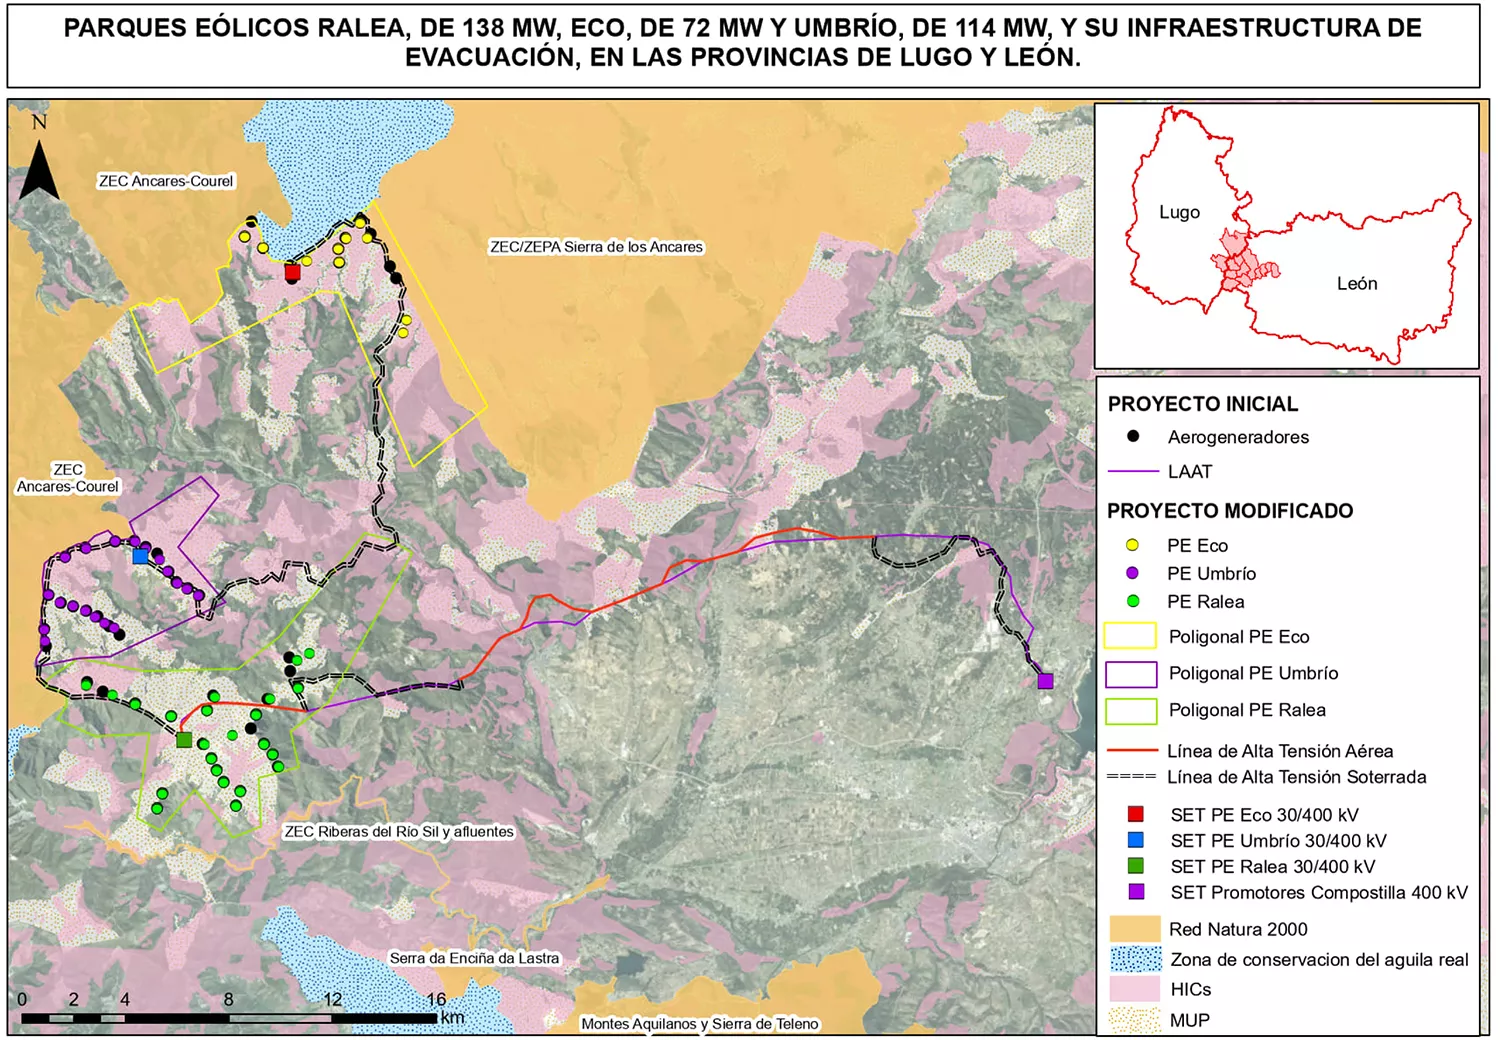 Rechazan la construcción de tres parques eólicos entre El Bierzo y Lugo por los daños sobre la fauna, vegetación y paisaje